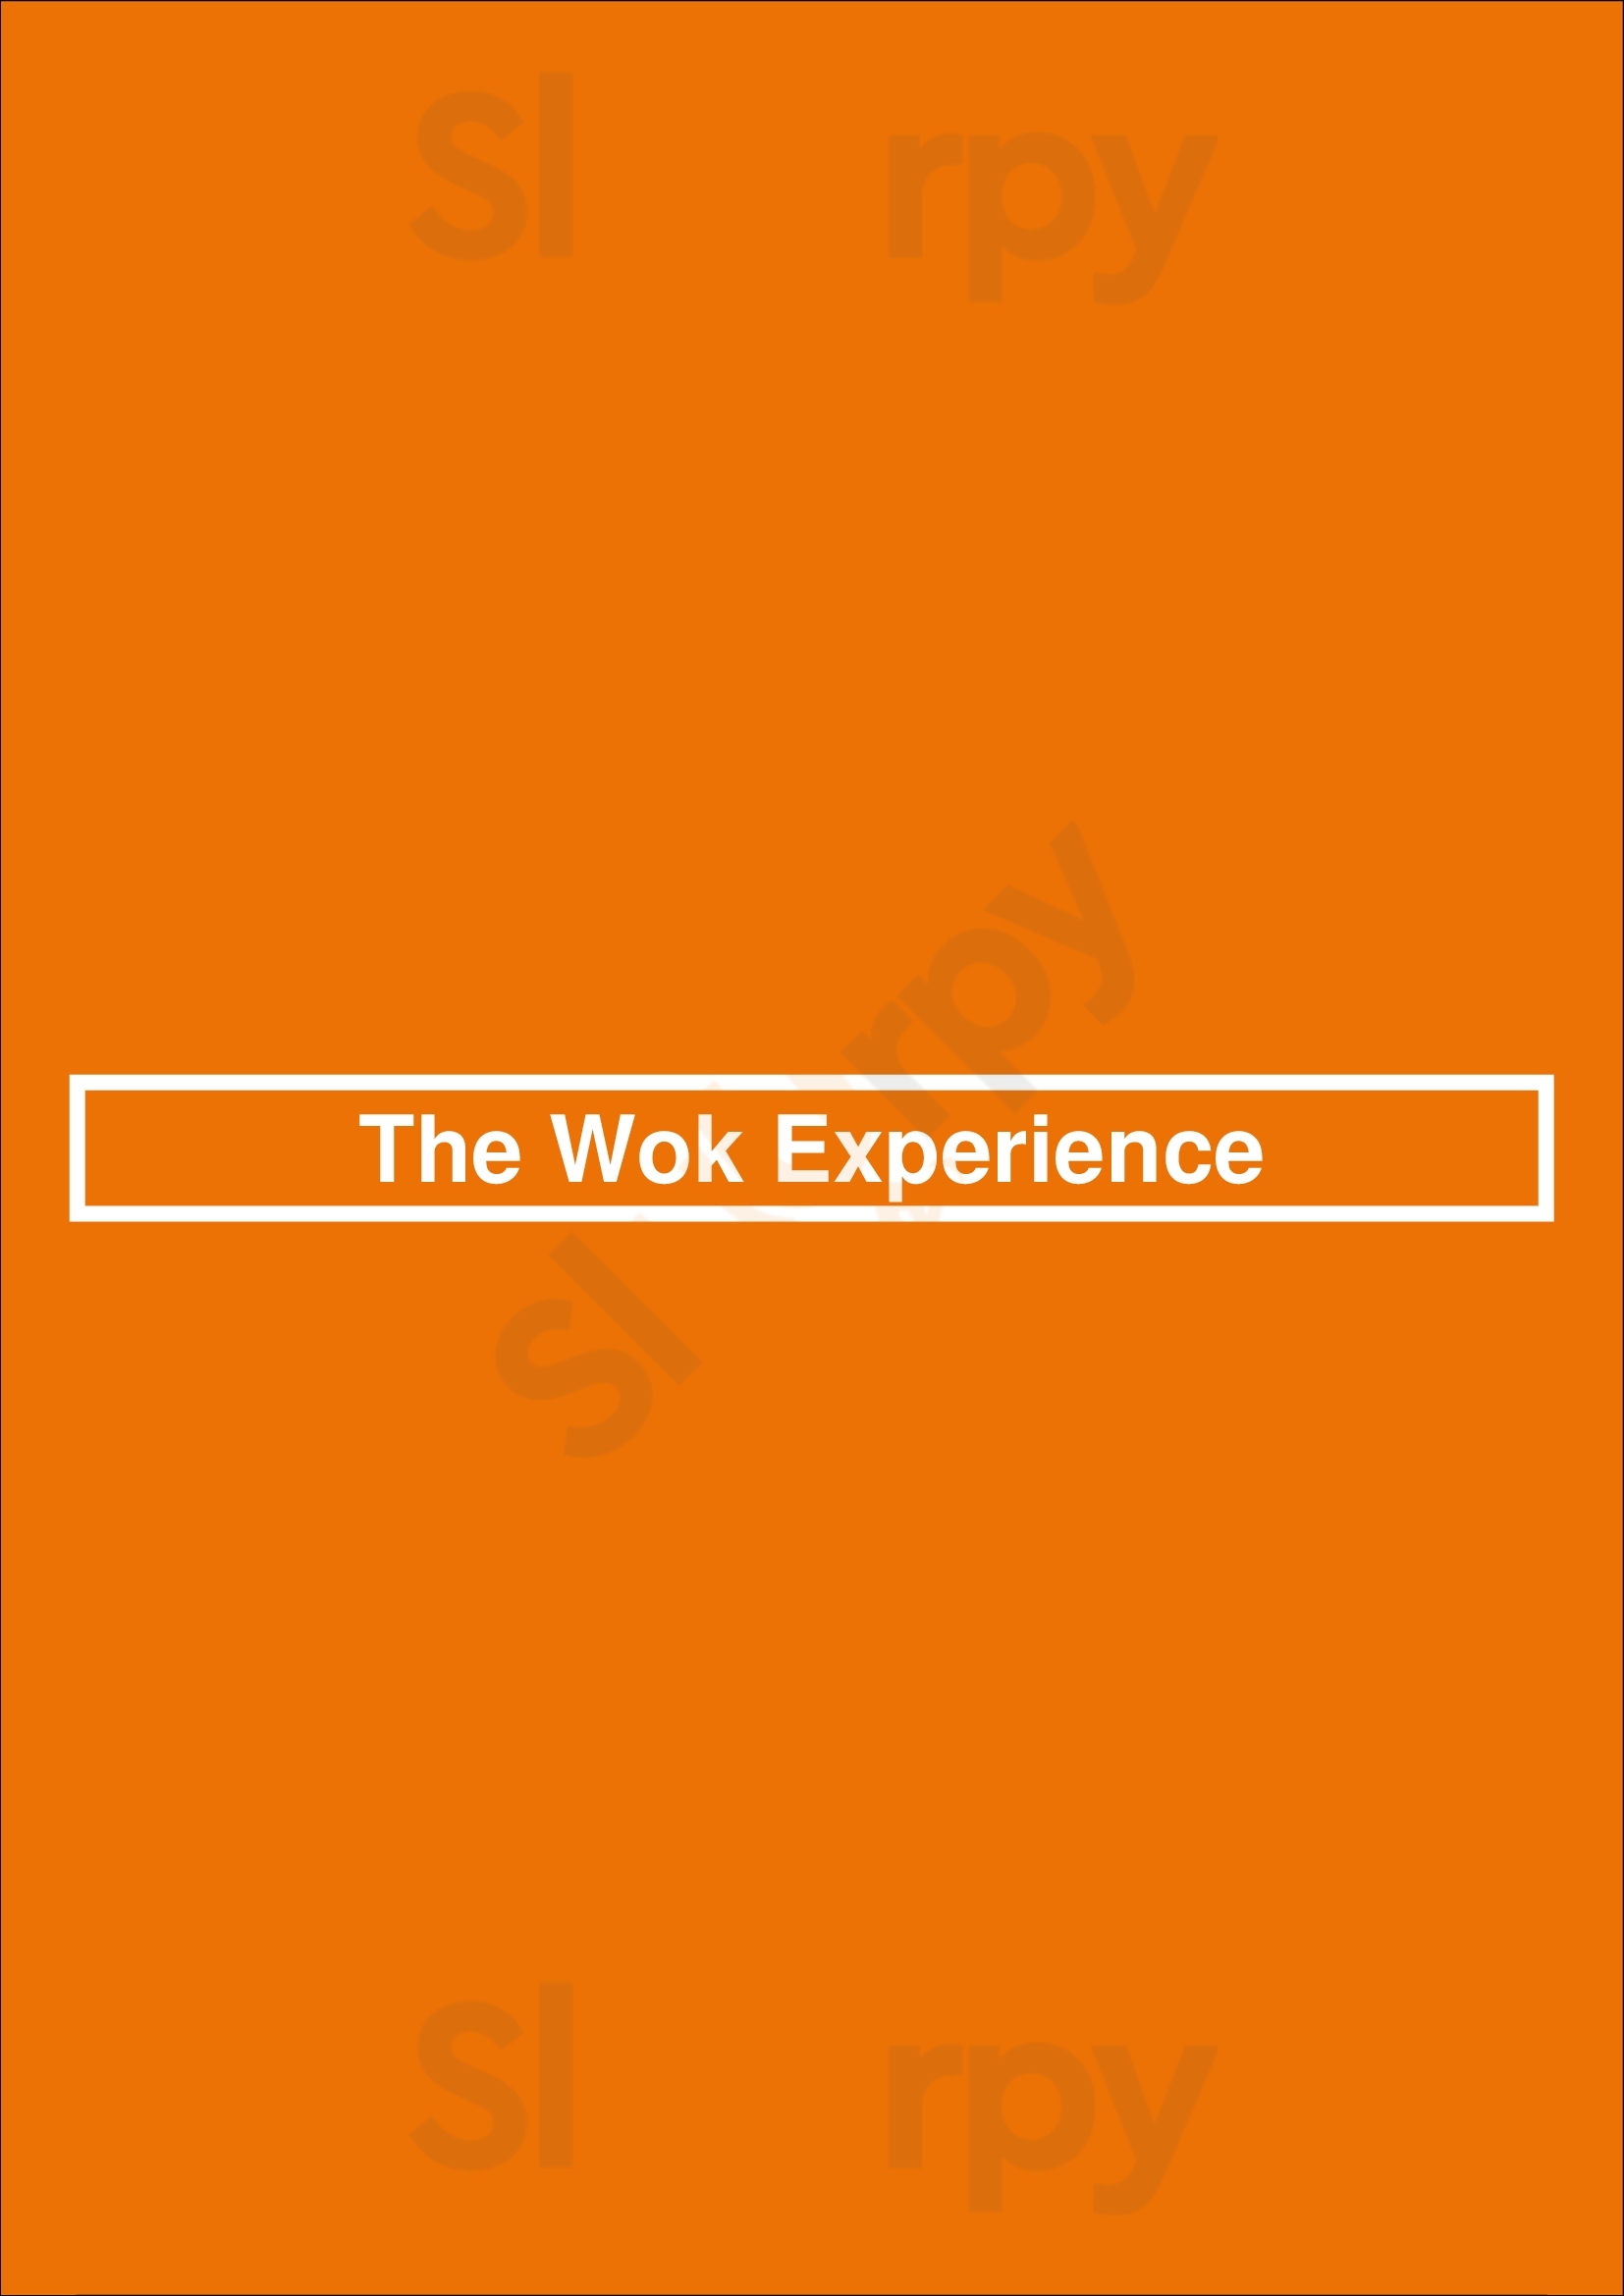 The Wok Experience Huntington Beach Menu - 1